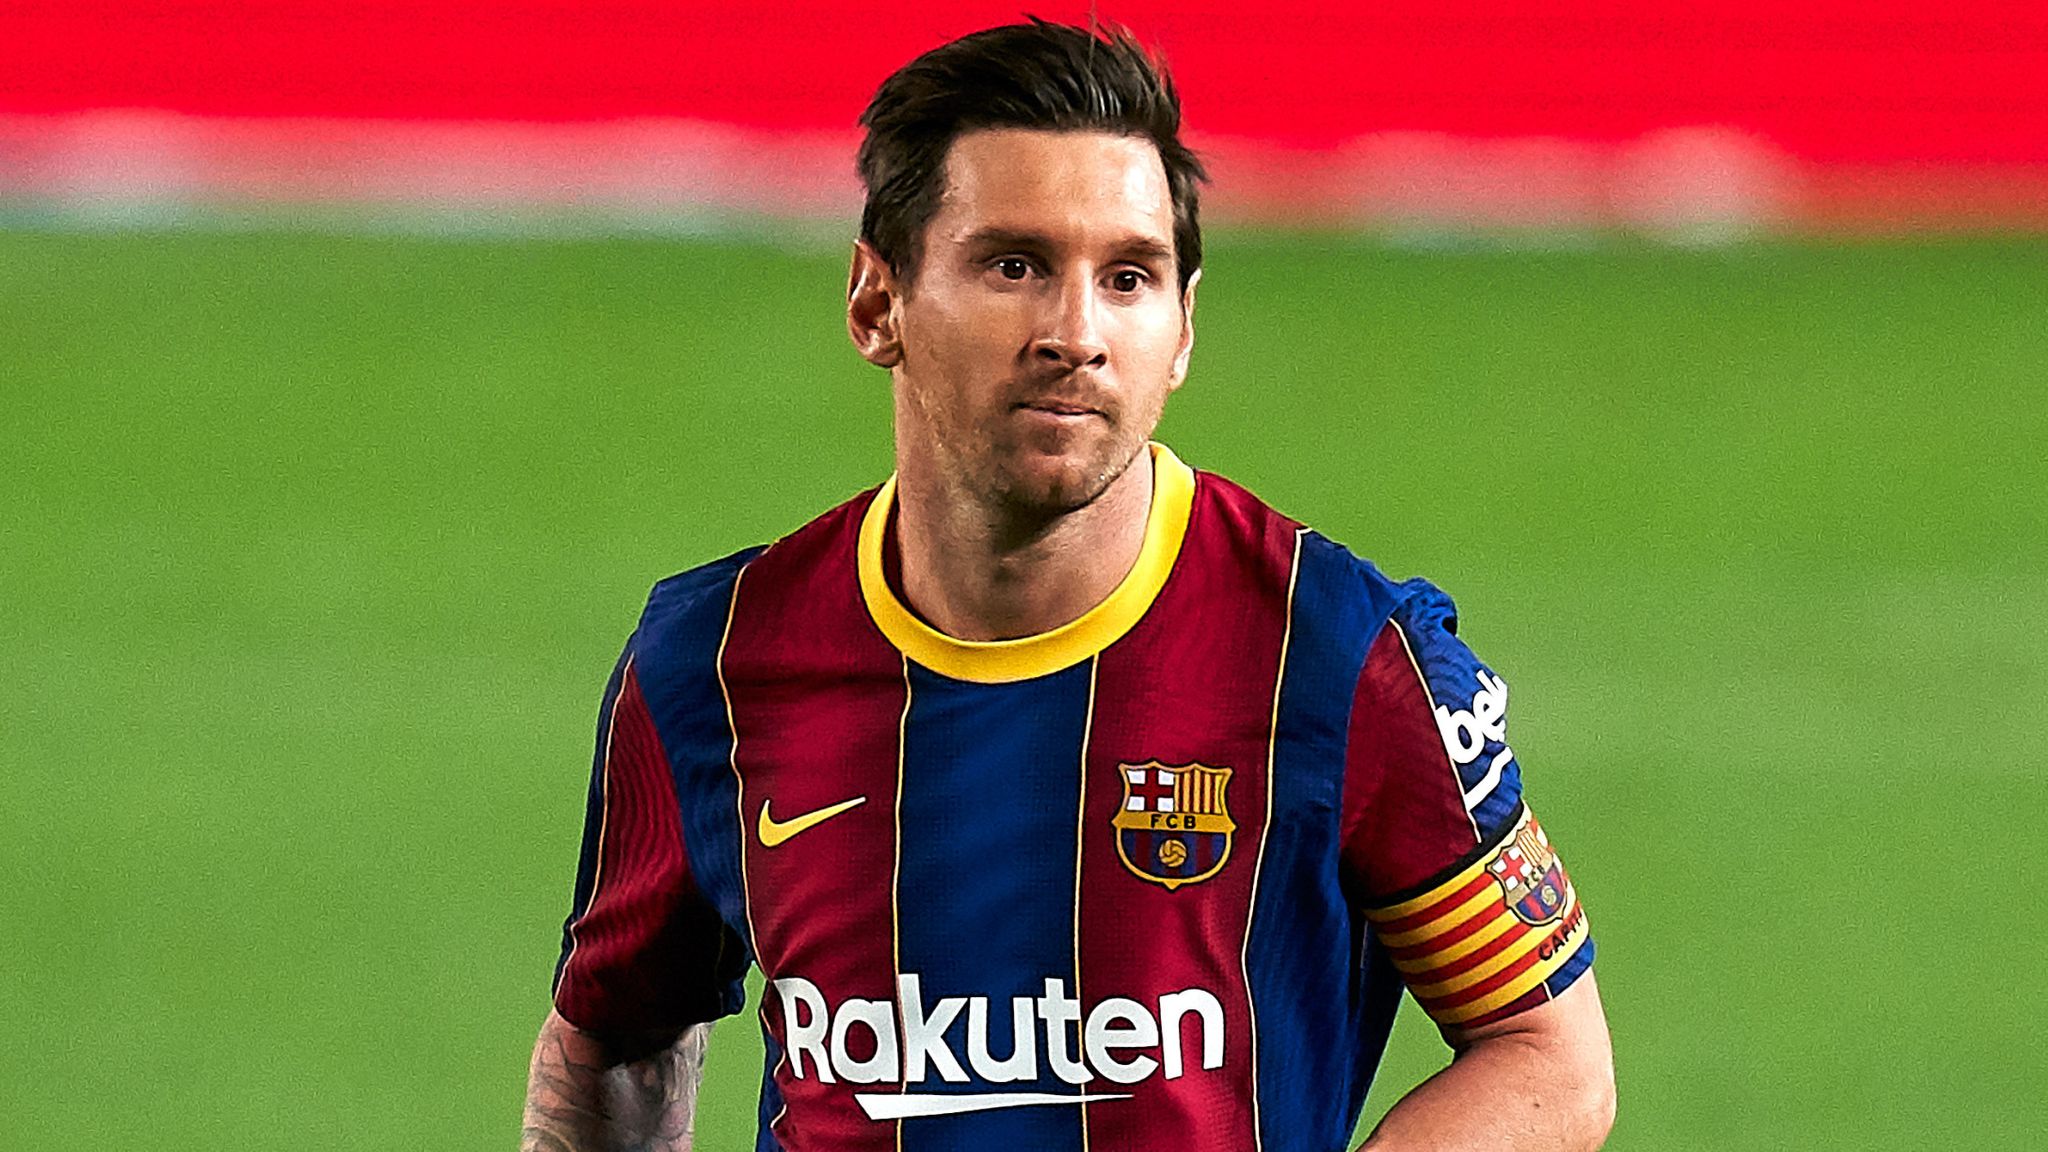 La course pour convaincre Messi de rester à Barcelone commence